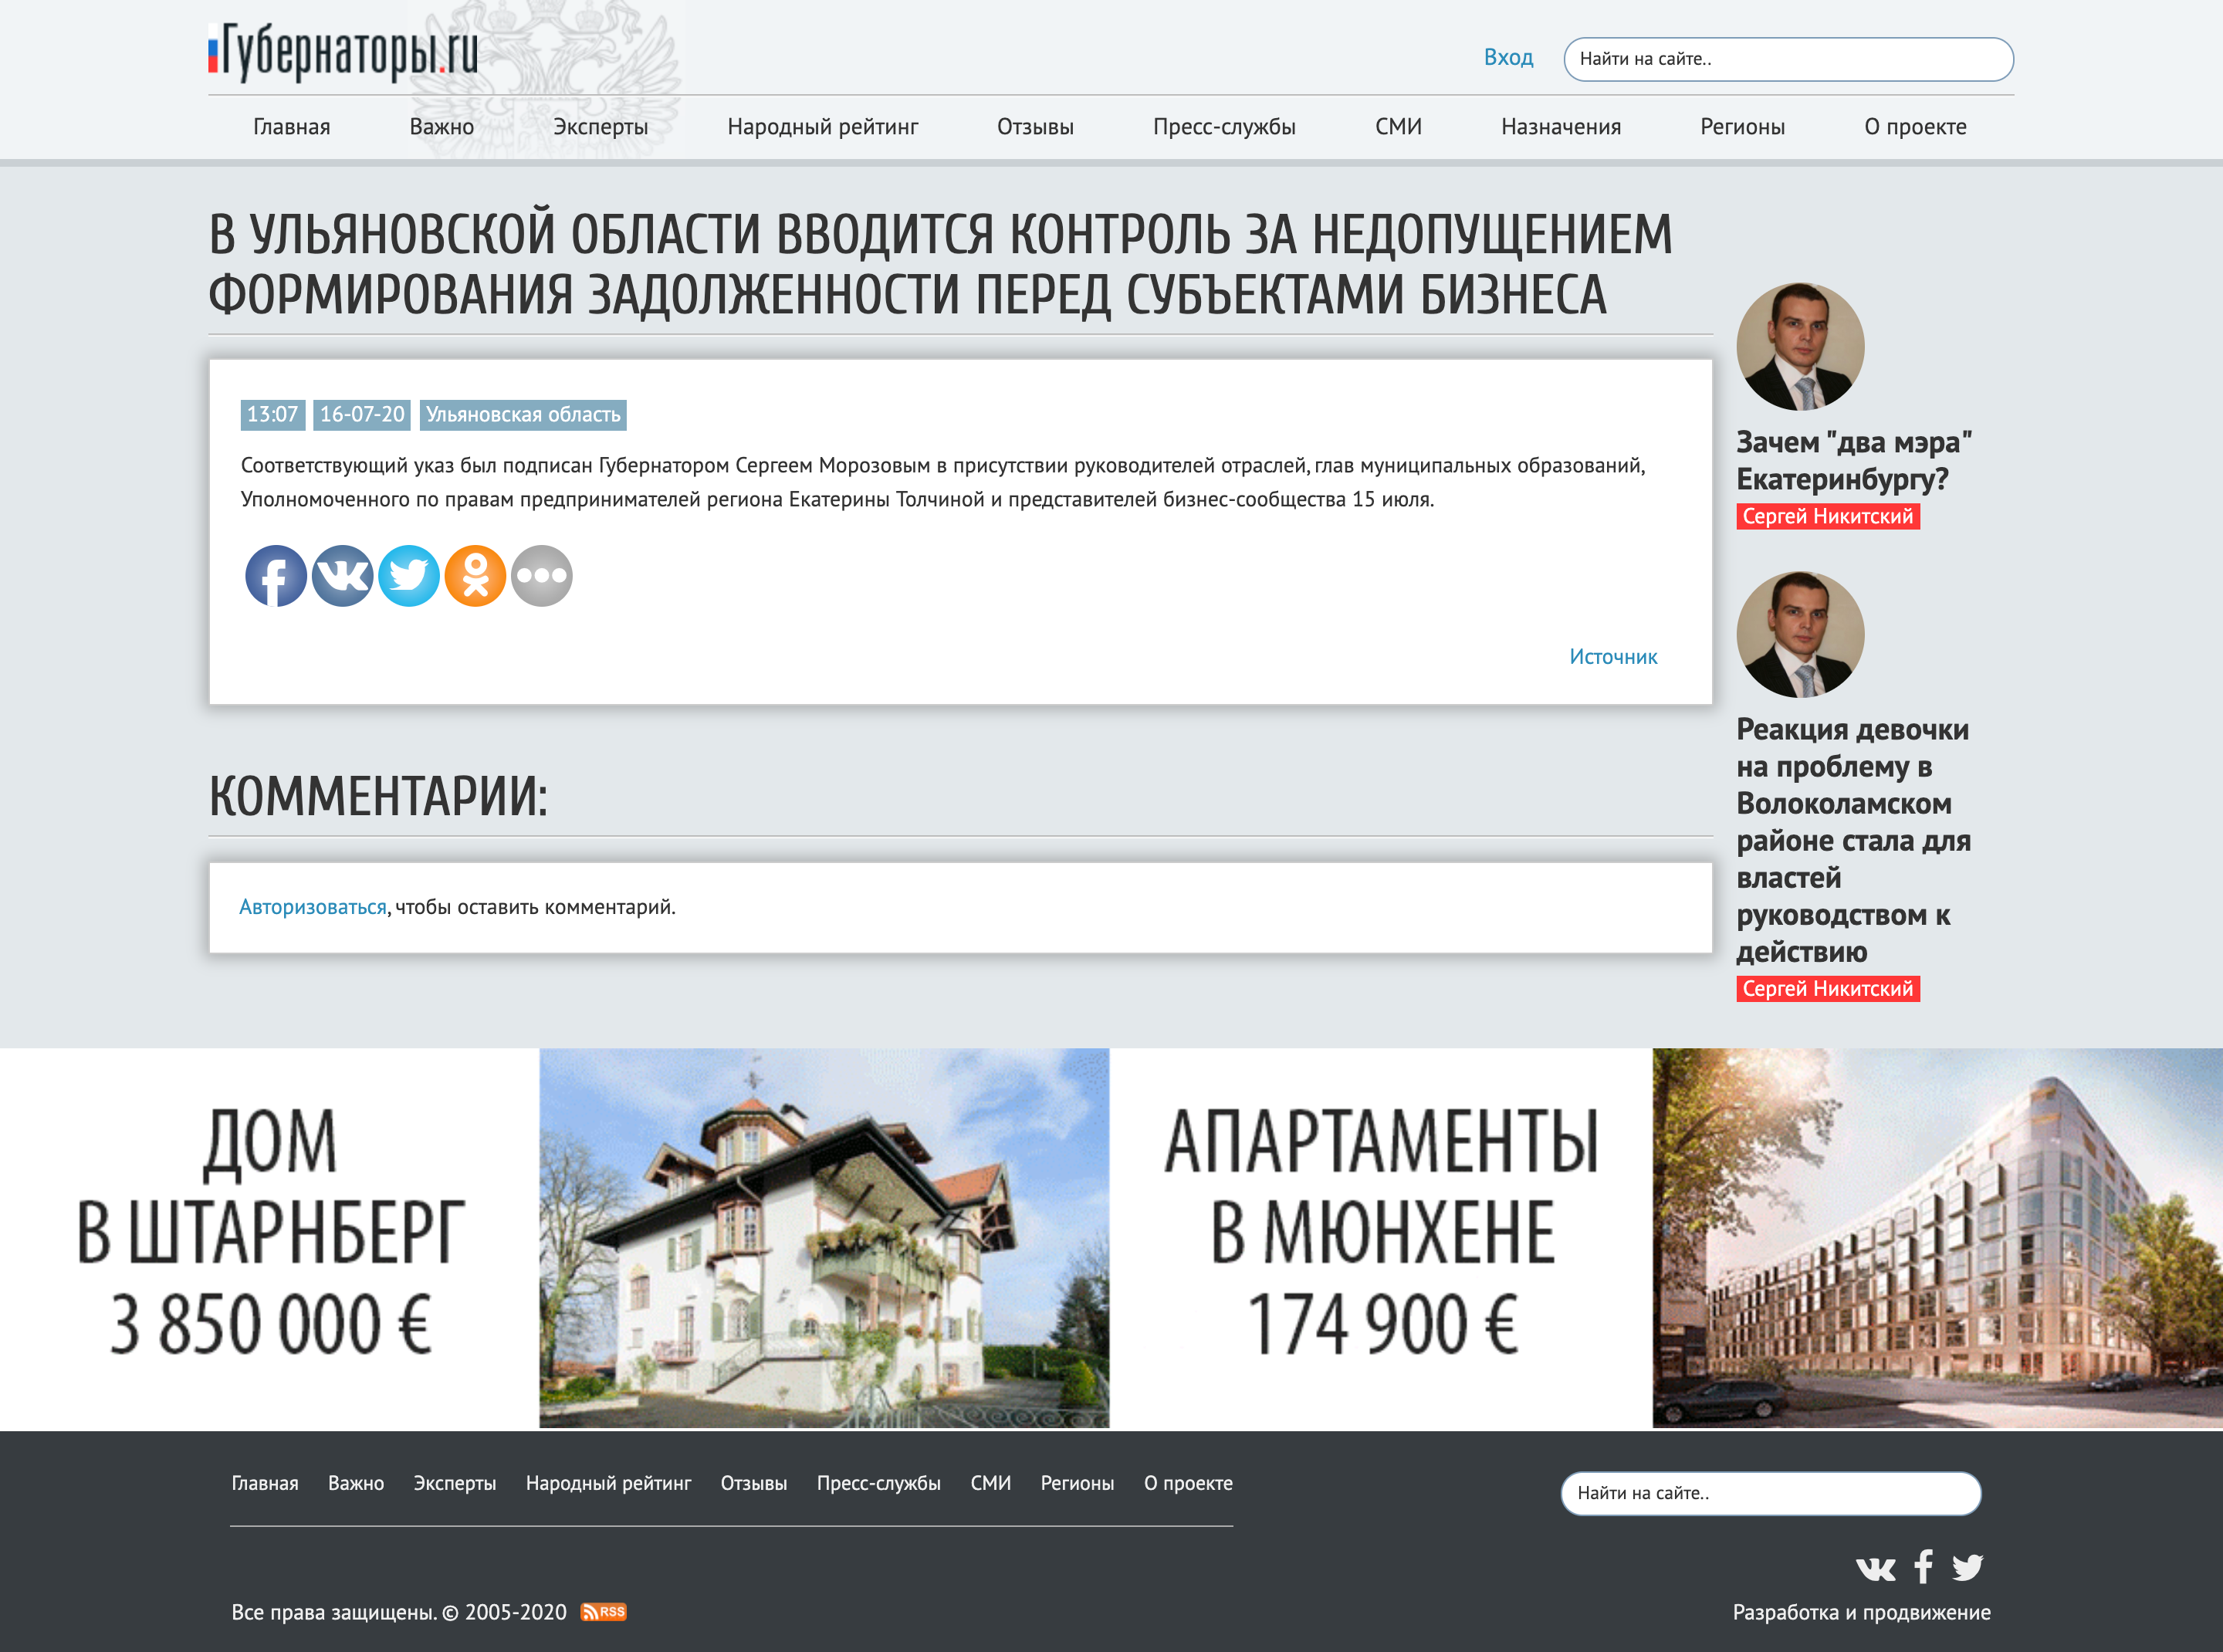 Https gisp gov ru pp719v2. Уполномоченный по правам предпринимателей в Самарской области.